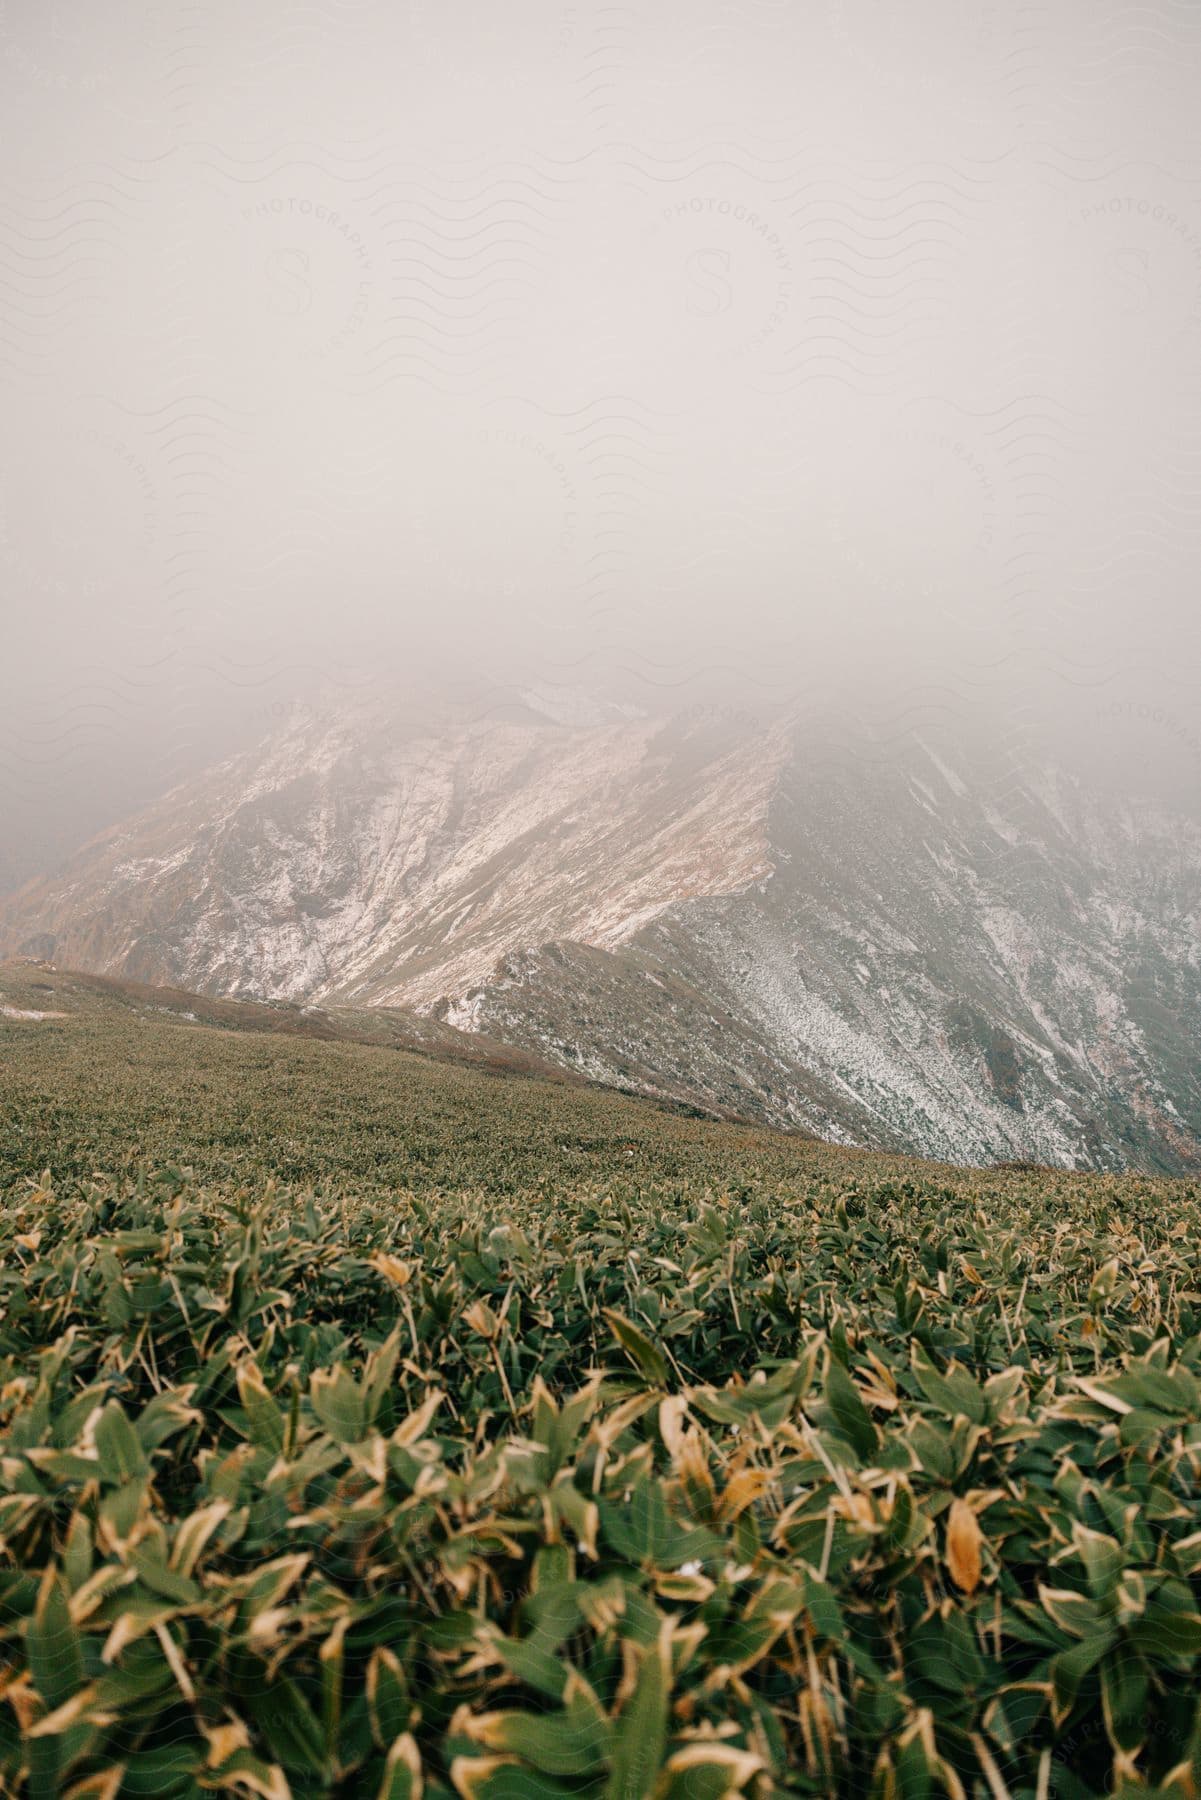 Plants grow on a hill near a mountain under a foggy sky